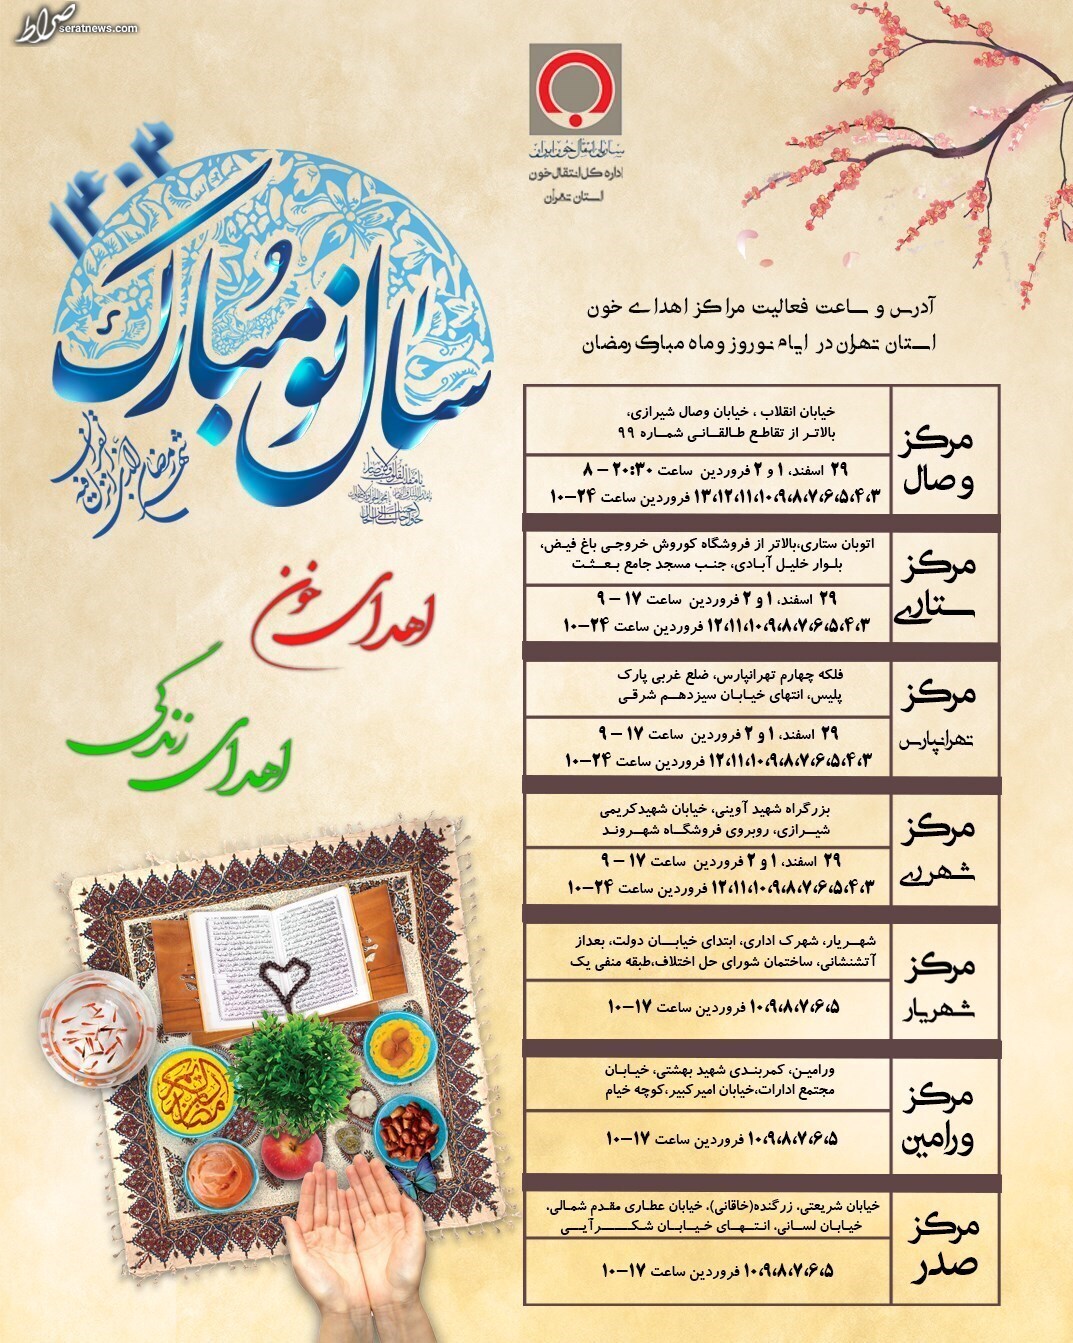 دعوت از مردم برای اهدای خون در ماه مبارک رمضان/ نشانی و ساعات فعالیت مراکز اهدای خون تهران